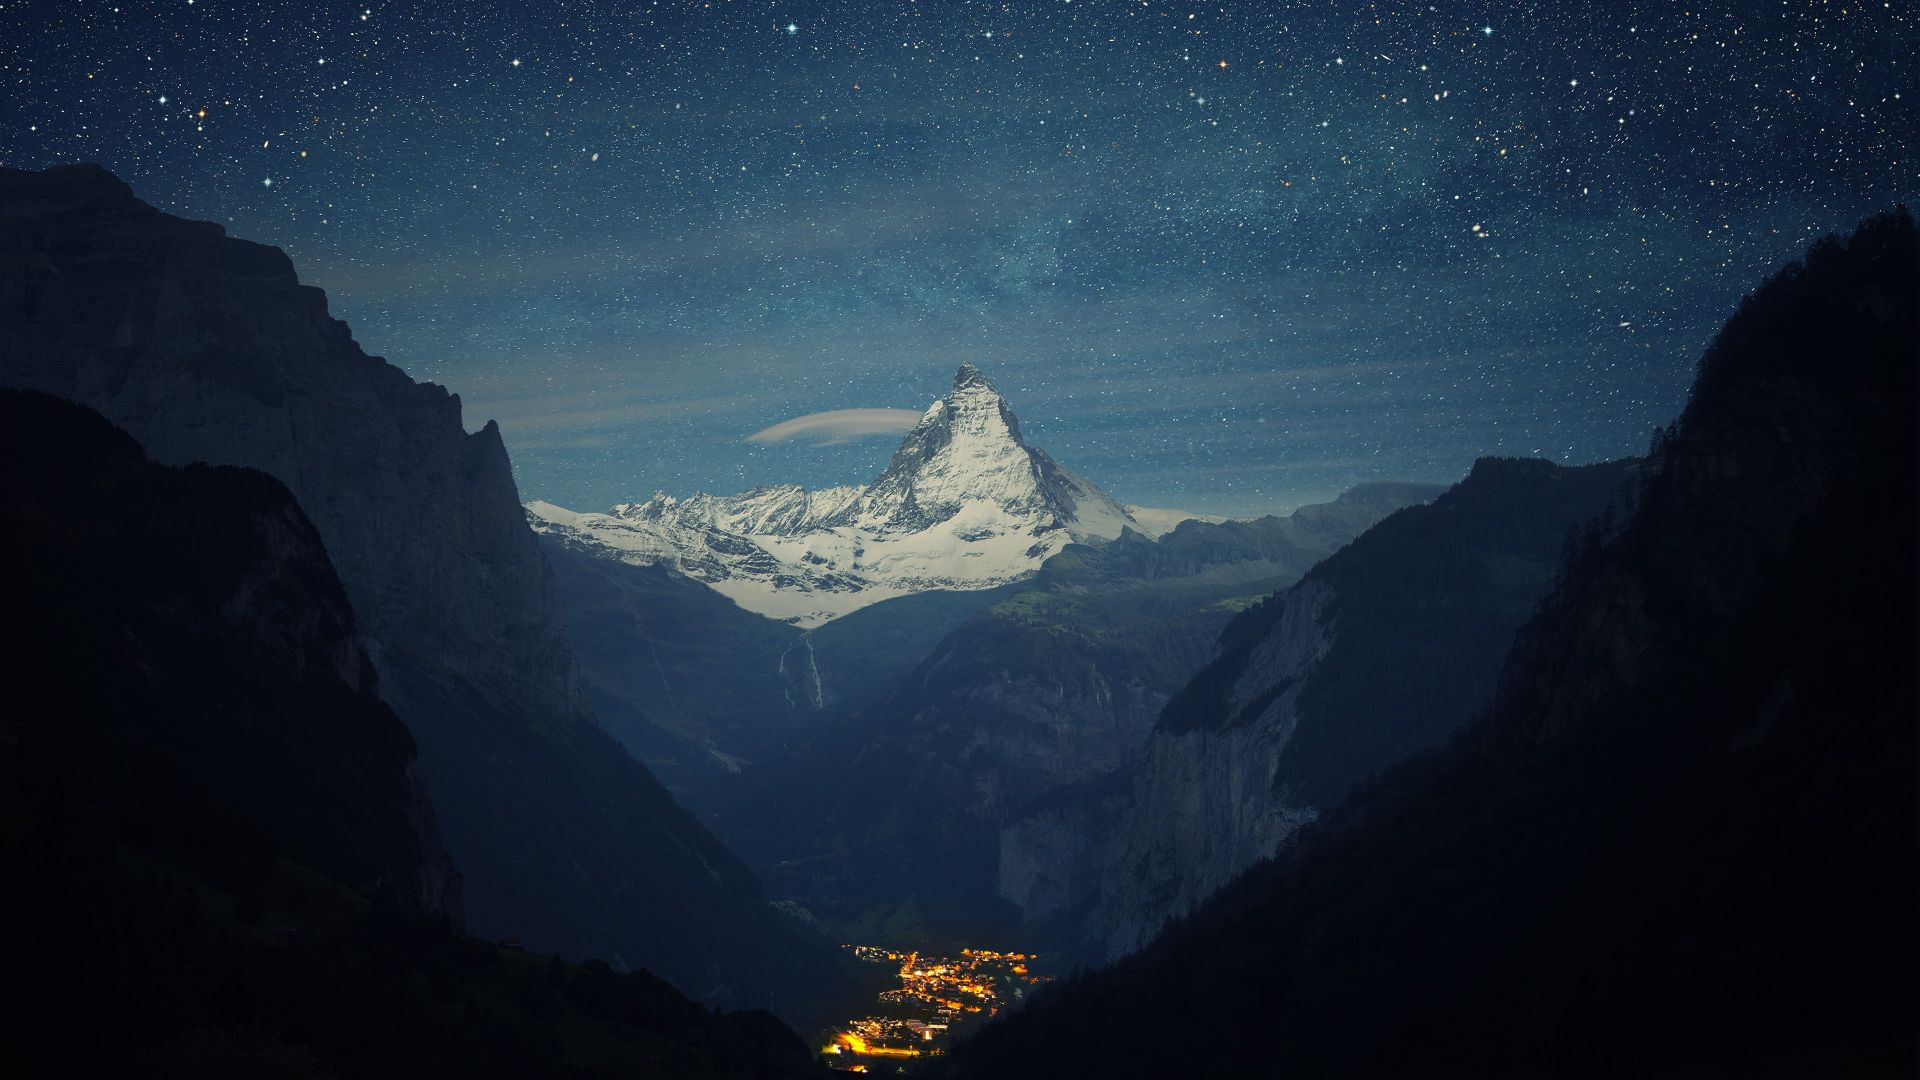 Матергорн, Швейцария, Европа, Zermatt-Matterhorn, Switzerland, Europe, 4K (horizontal)